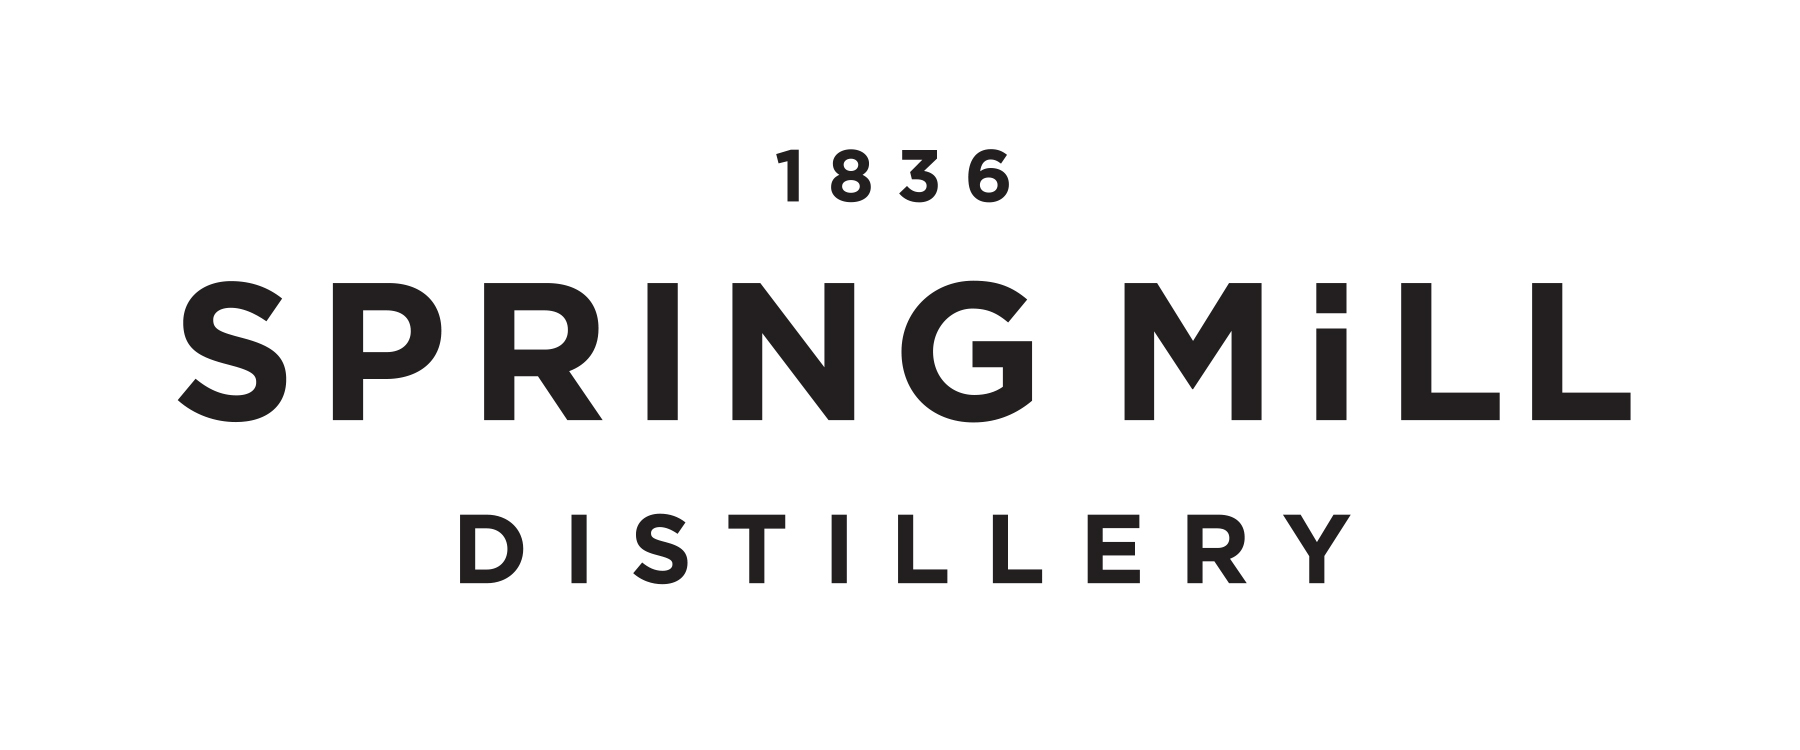 Spring Mill Distillery Ltd